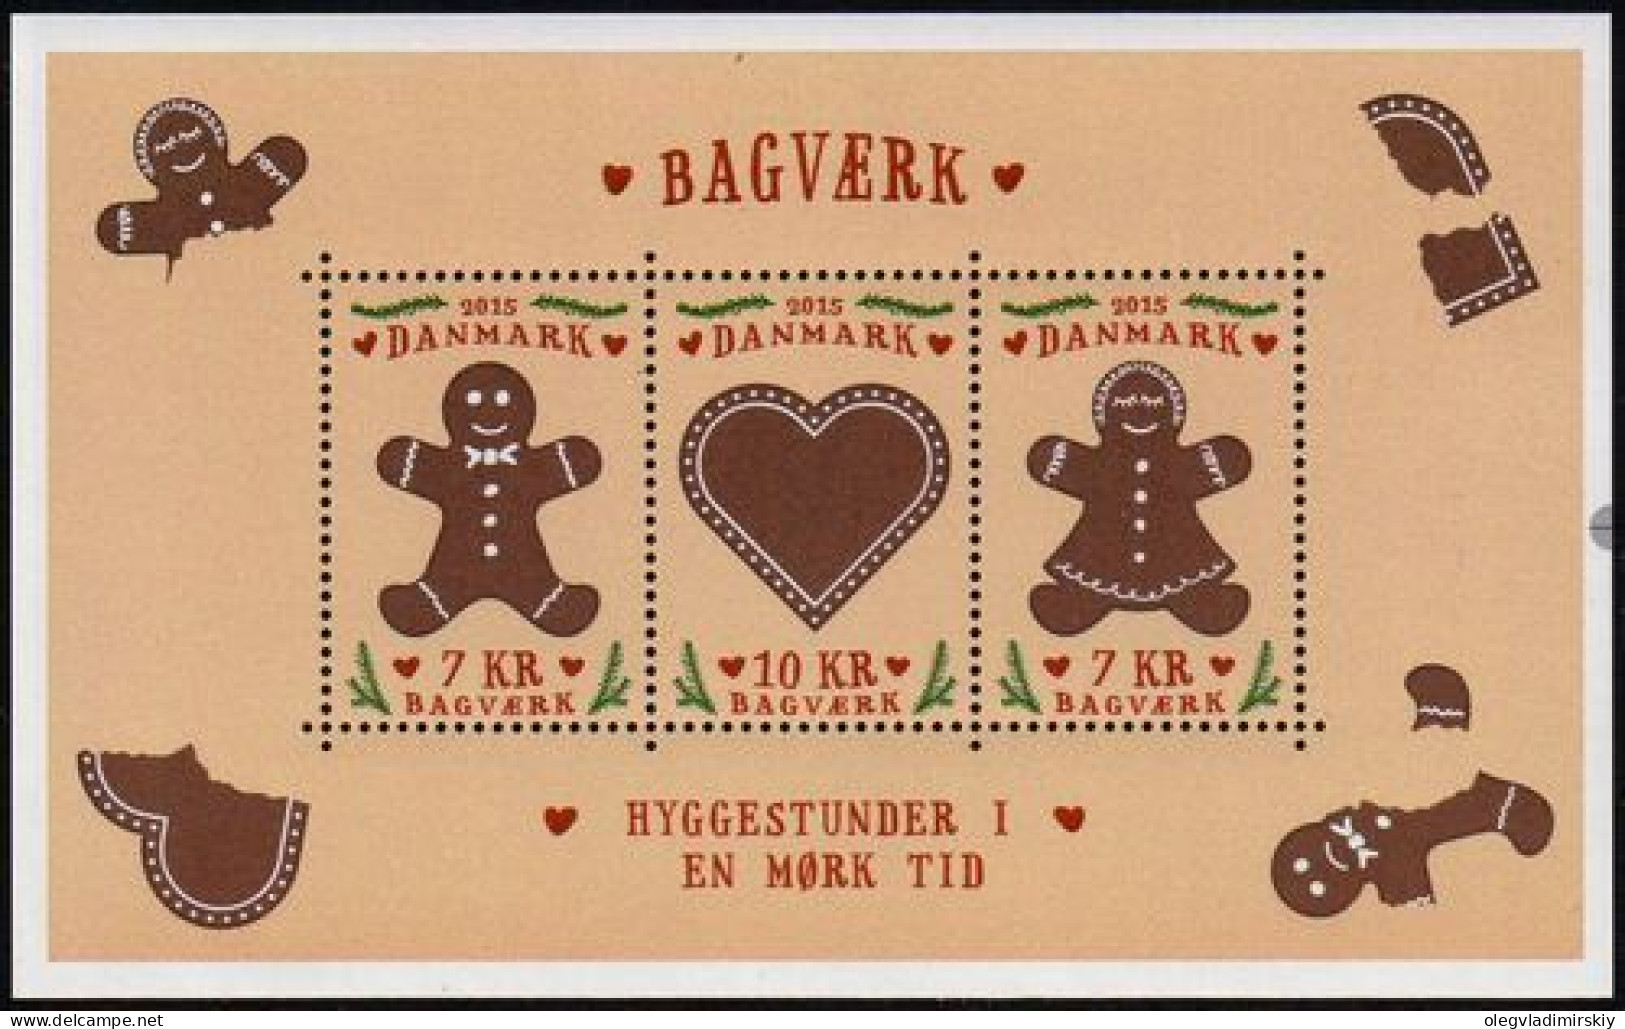 Denmark Danemark Danmark 2015 Christmas Cookies Set Of 3 Stamps In Block Mint - Hojas Bloque